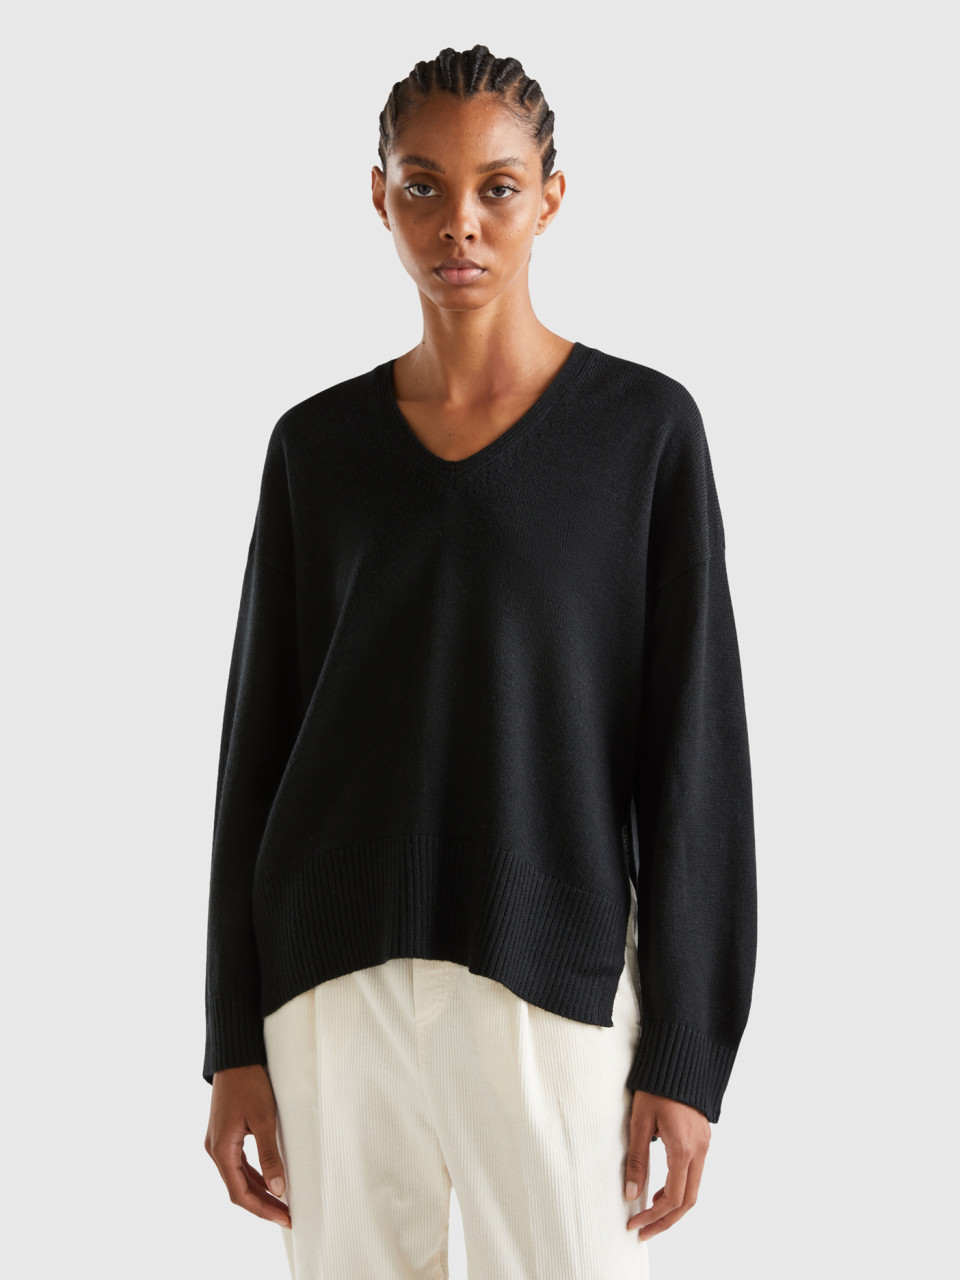 Benetton, Oversized Fit V-neck Sweater, Black, Women